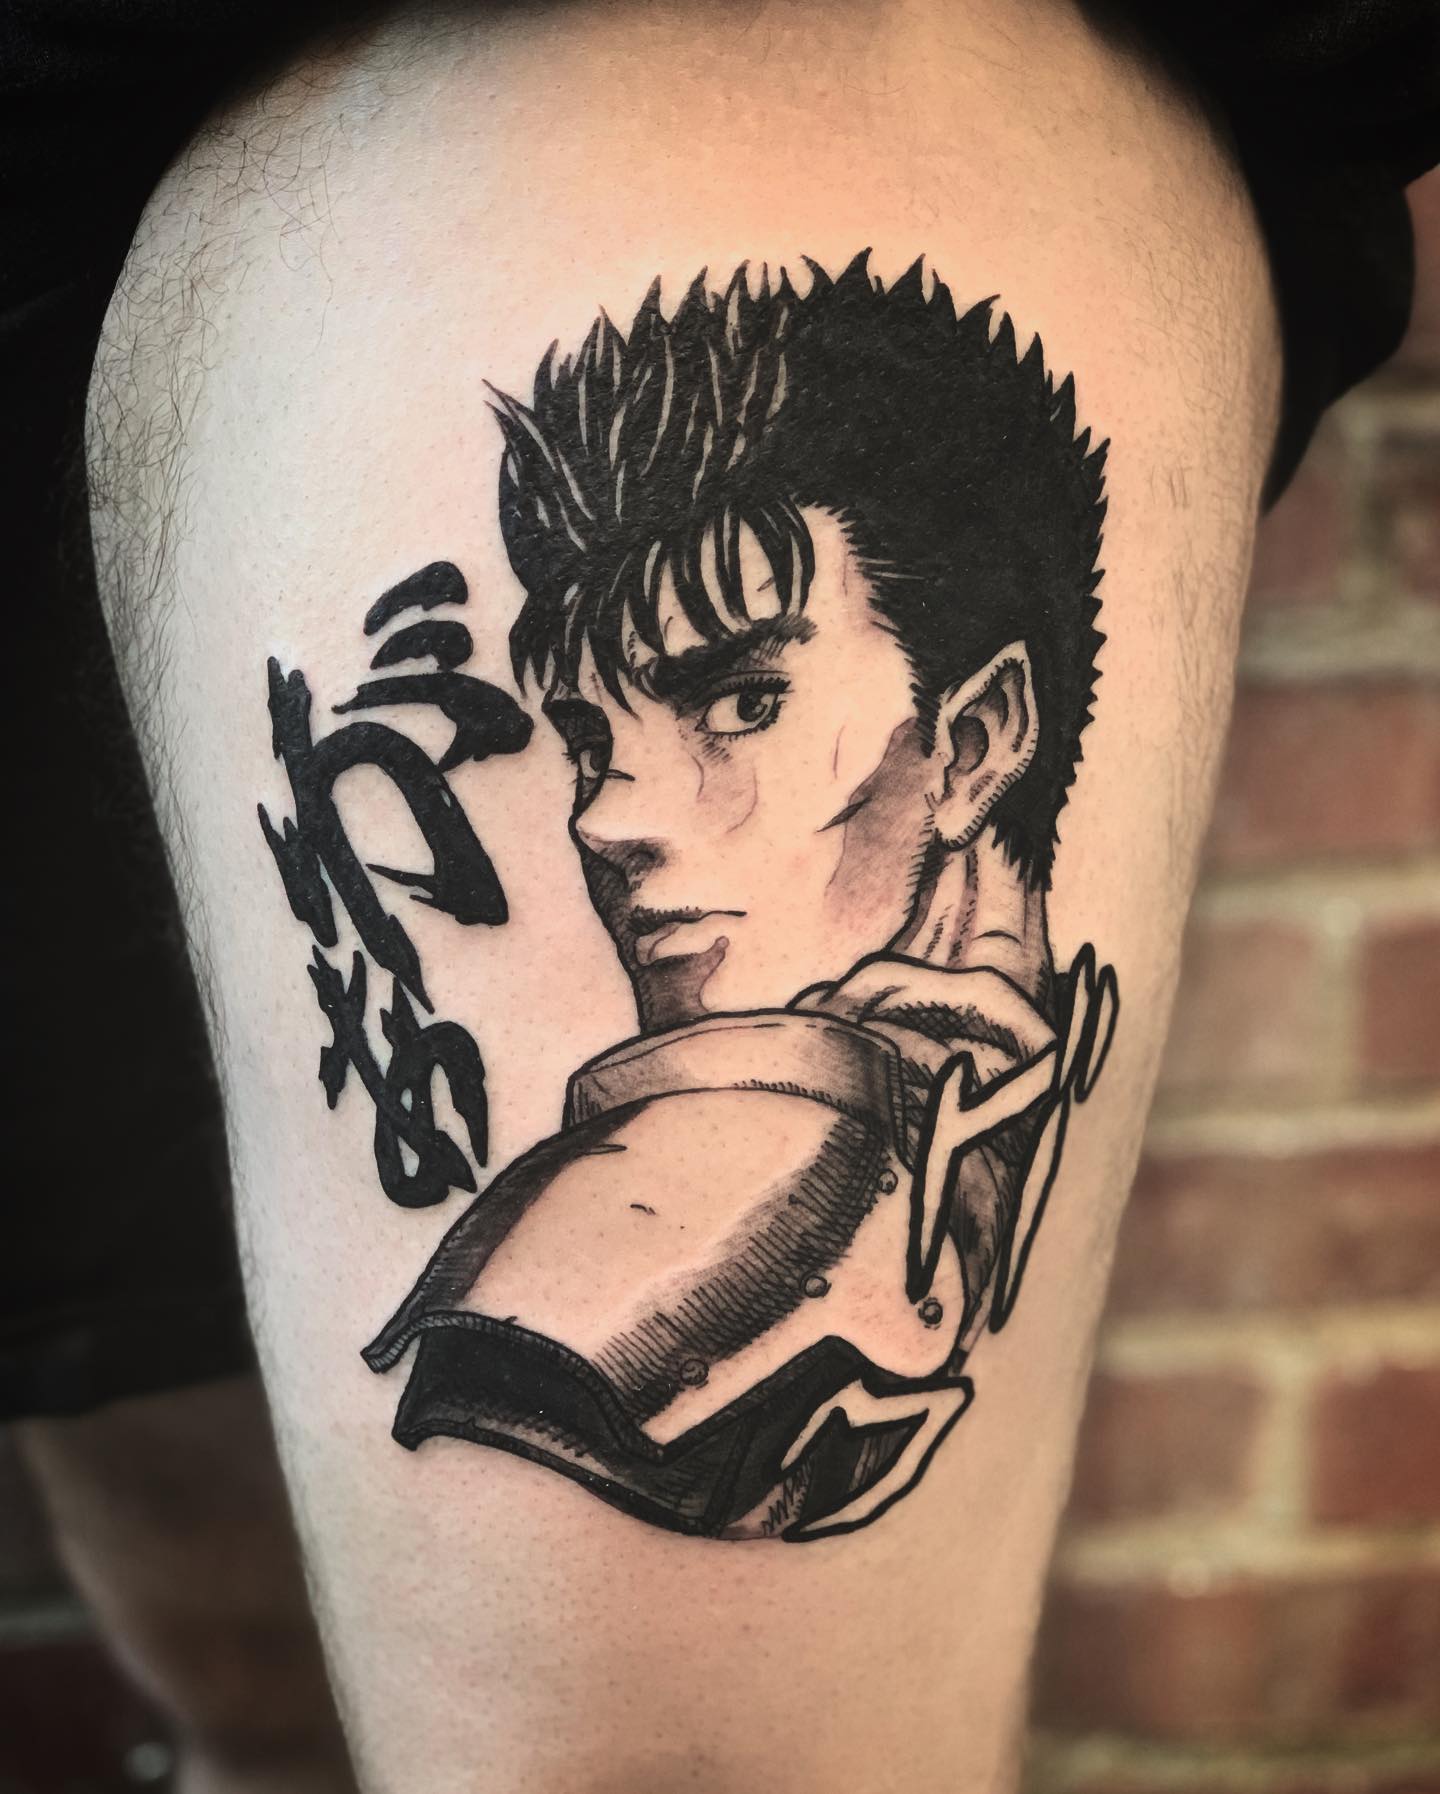 Tatuaje de Berserk Manga